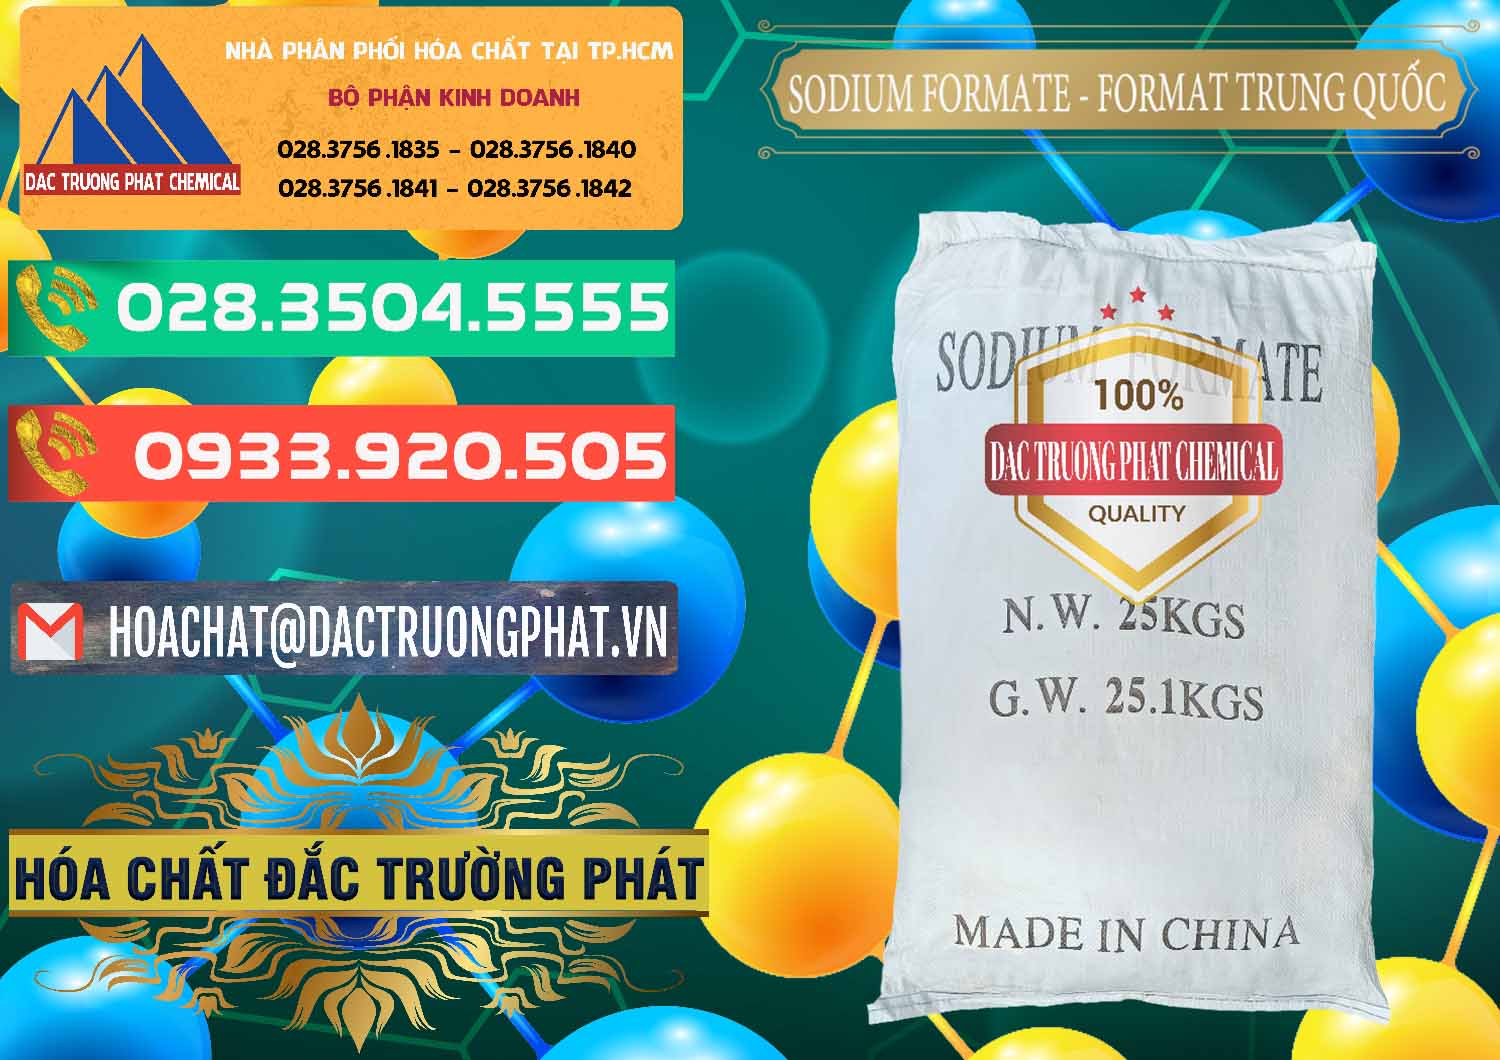 Đơn vị chuyên bán - phân phối Sodium Formate - Natri Format Trung Quốc China - 0142 - Cty nhập khẩu ( cung cấp ) hóa chất tại TP.HCM - congtyhoachat.com.vn